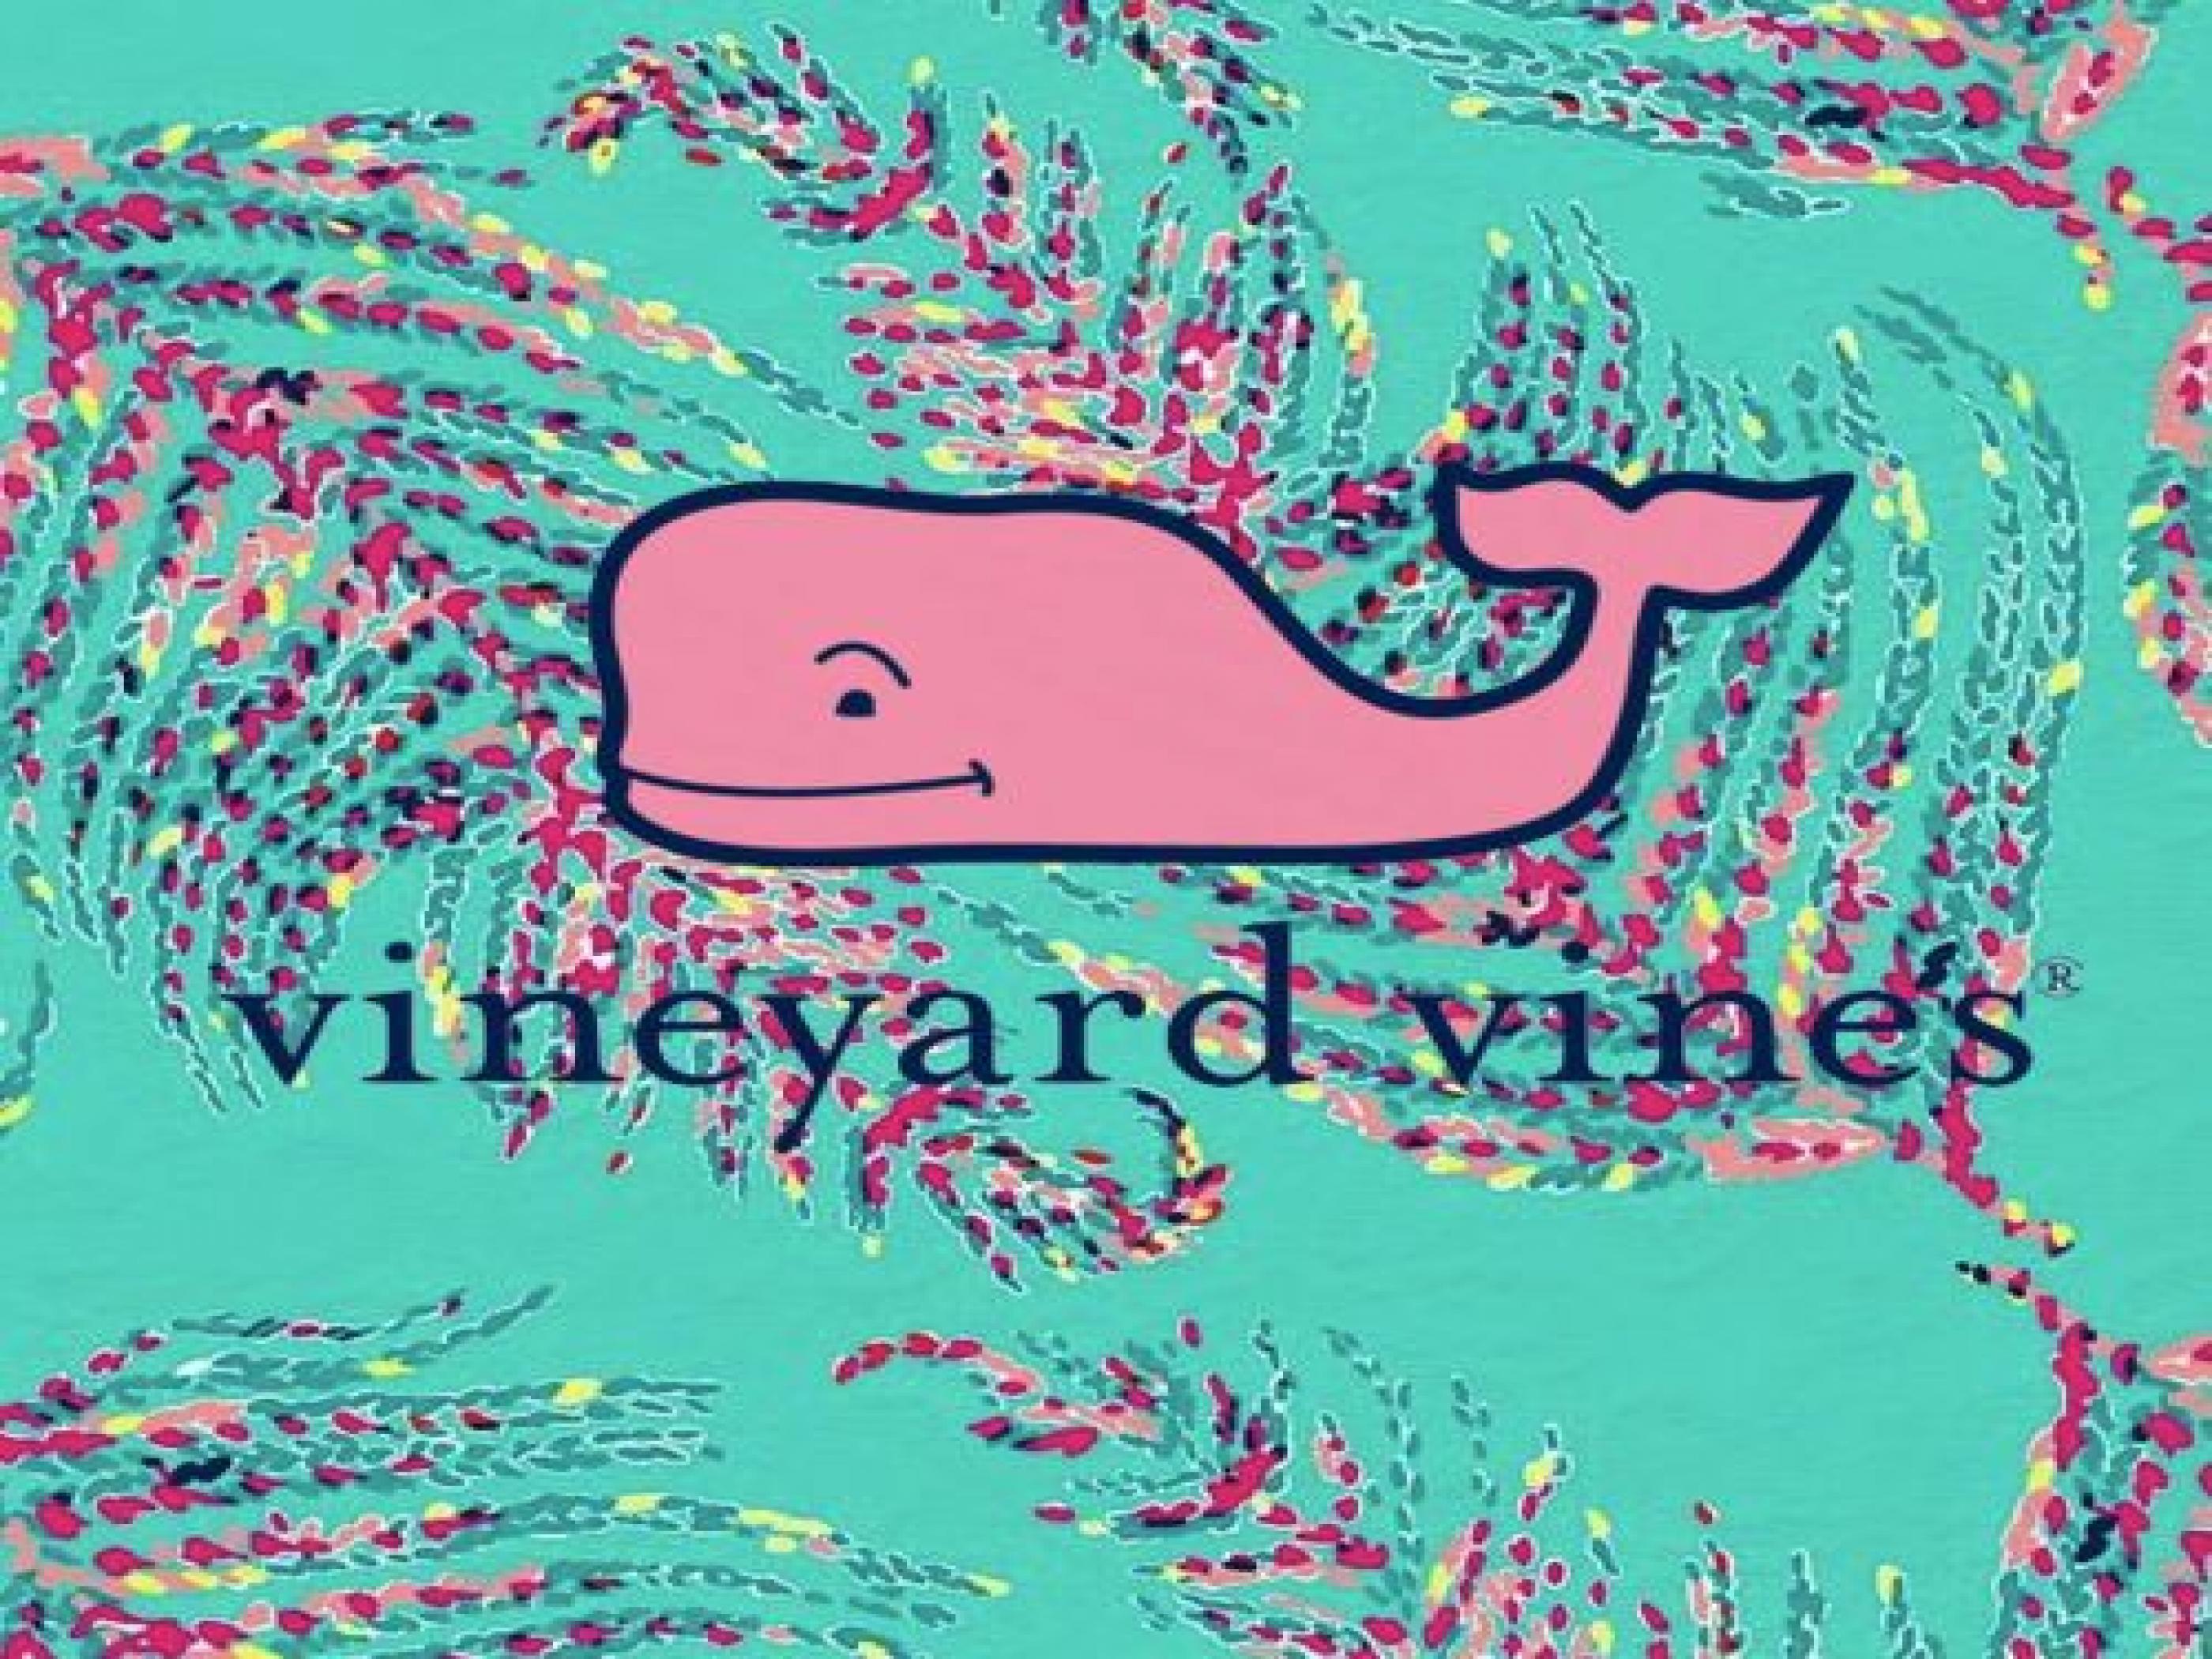 Vineyard Vines Wallpapers - Top Free